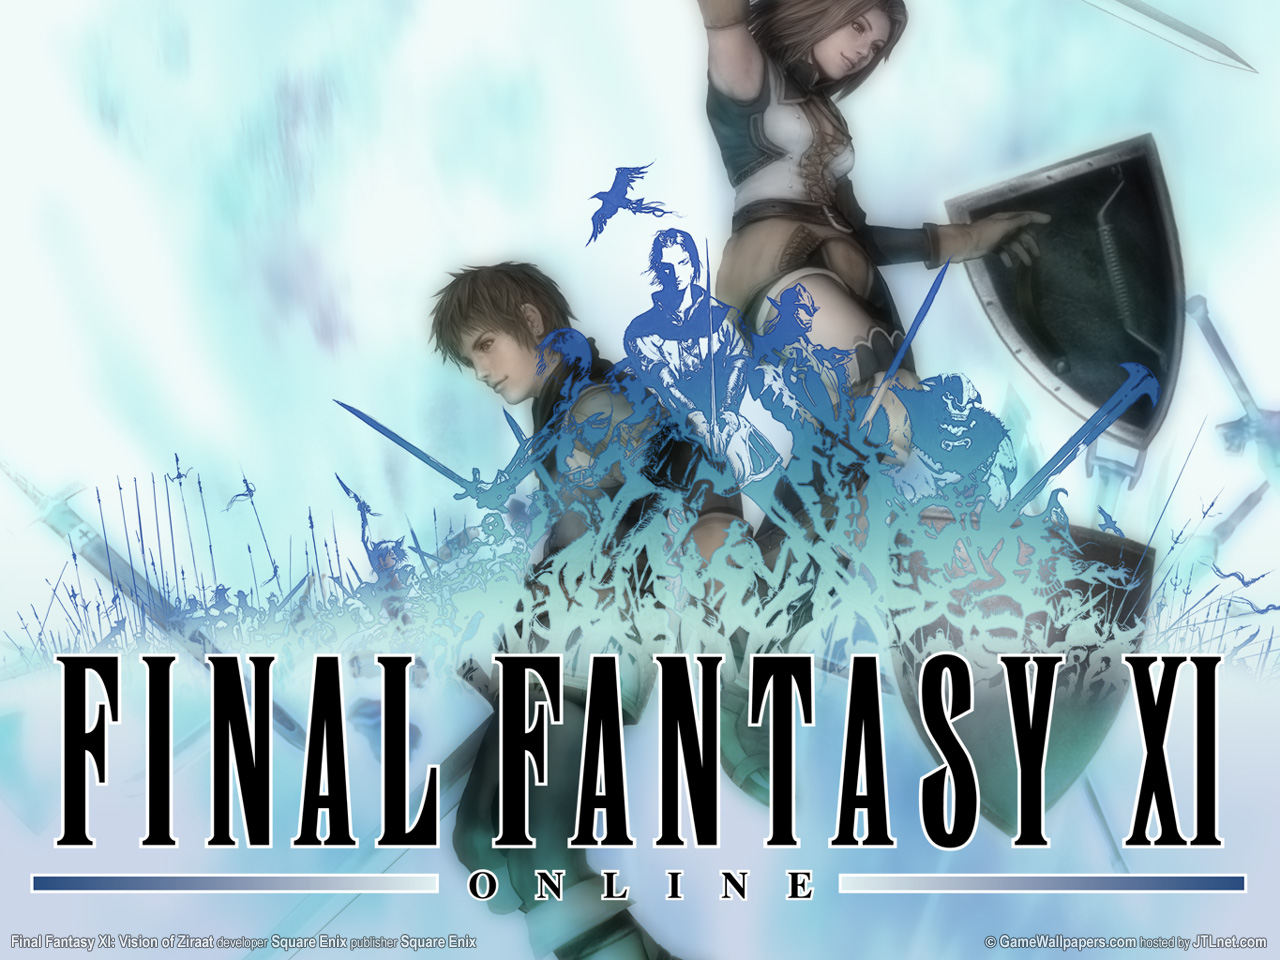 Wallpaper FF XI Final Fantasy 11